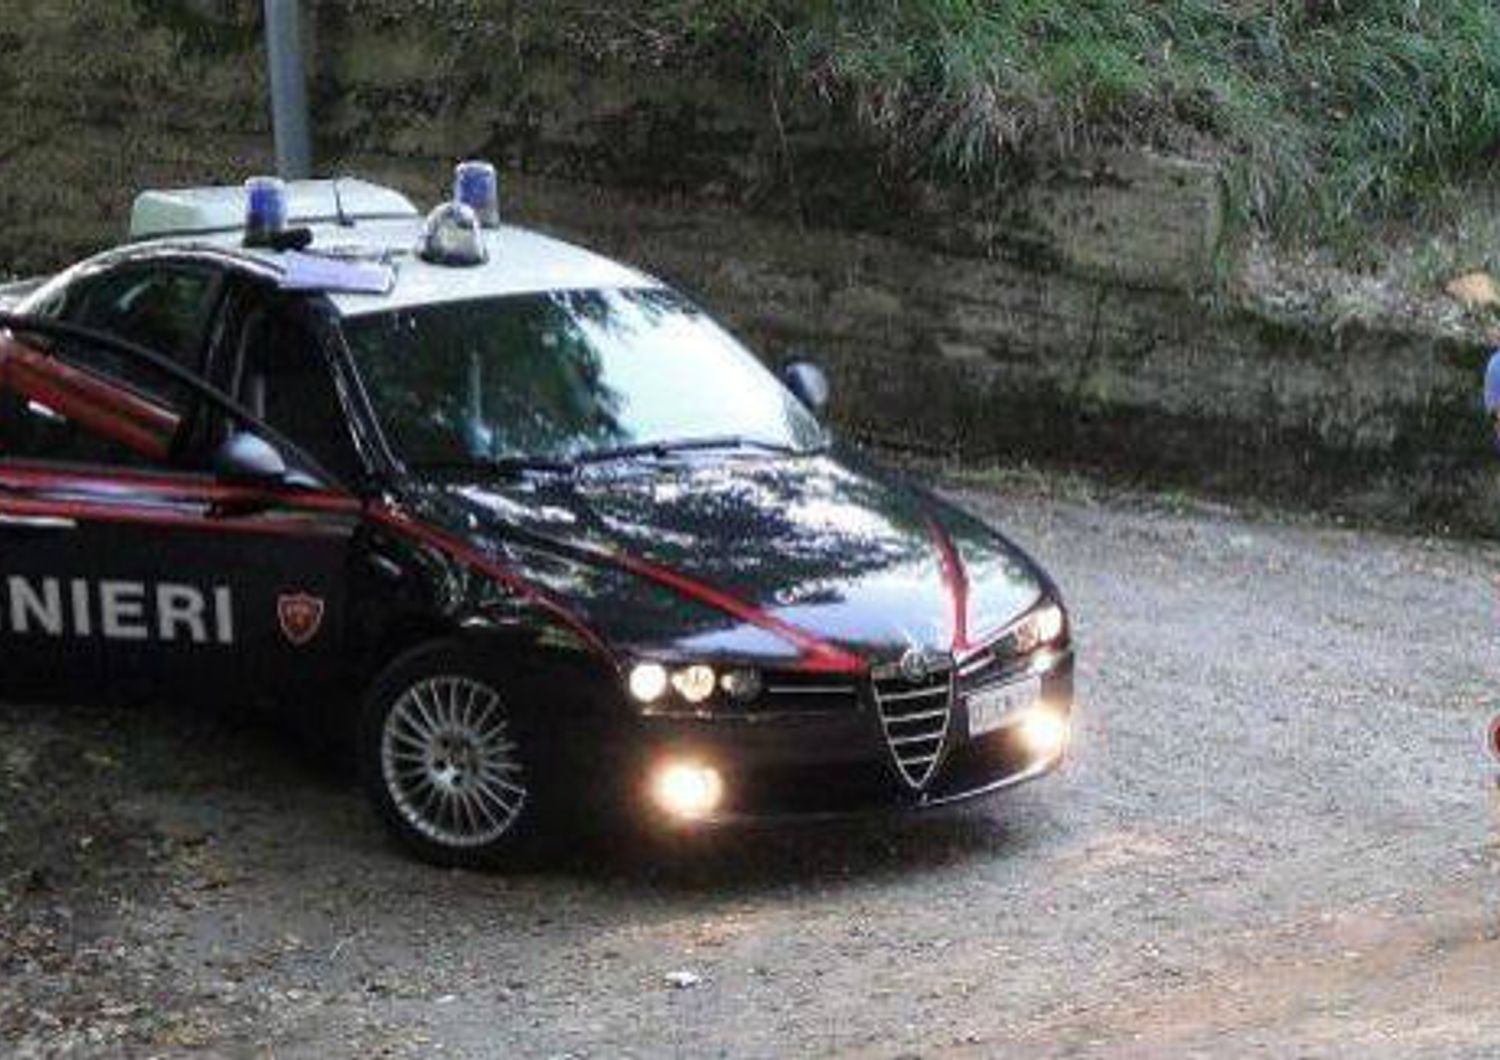 &nbsp;carabinieri auto - fb